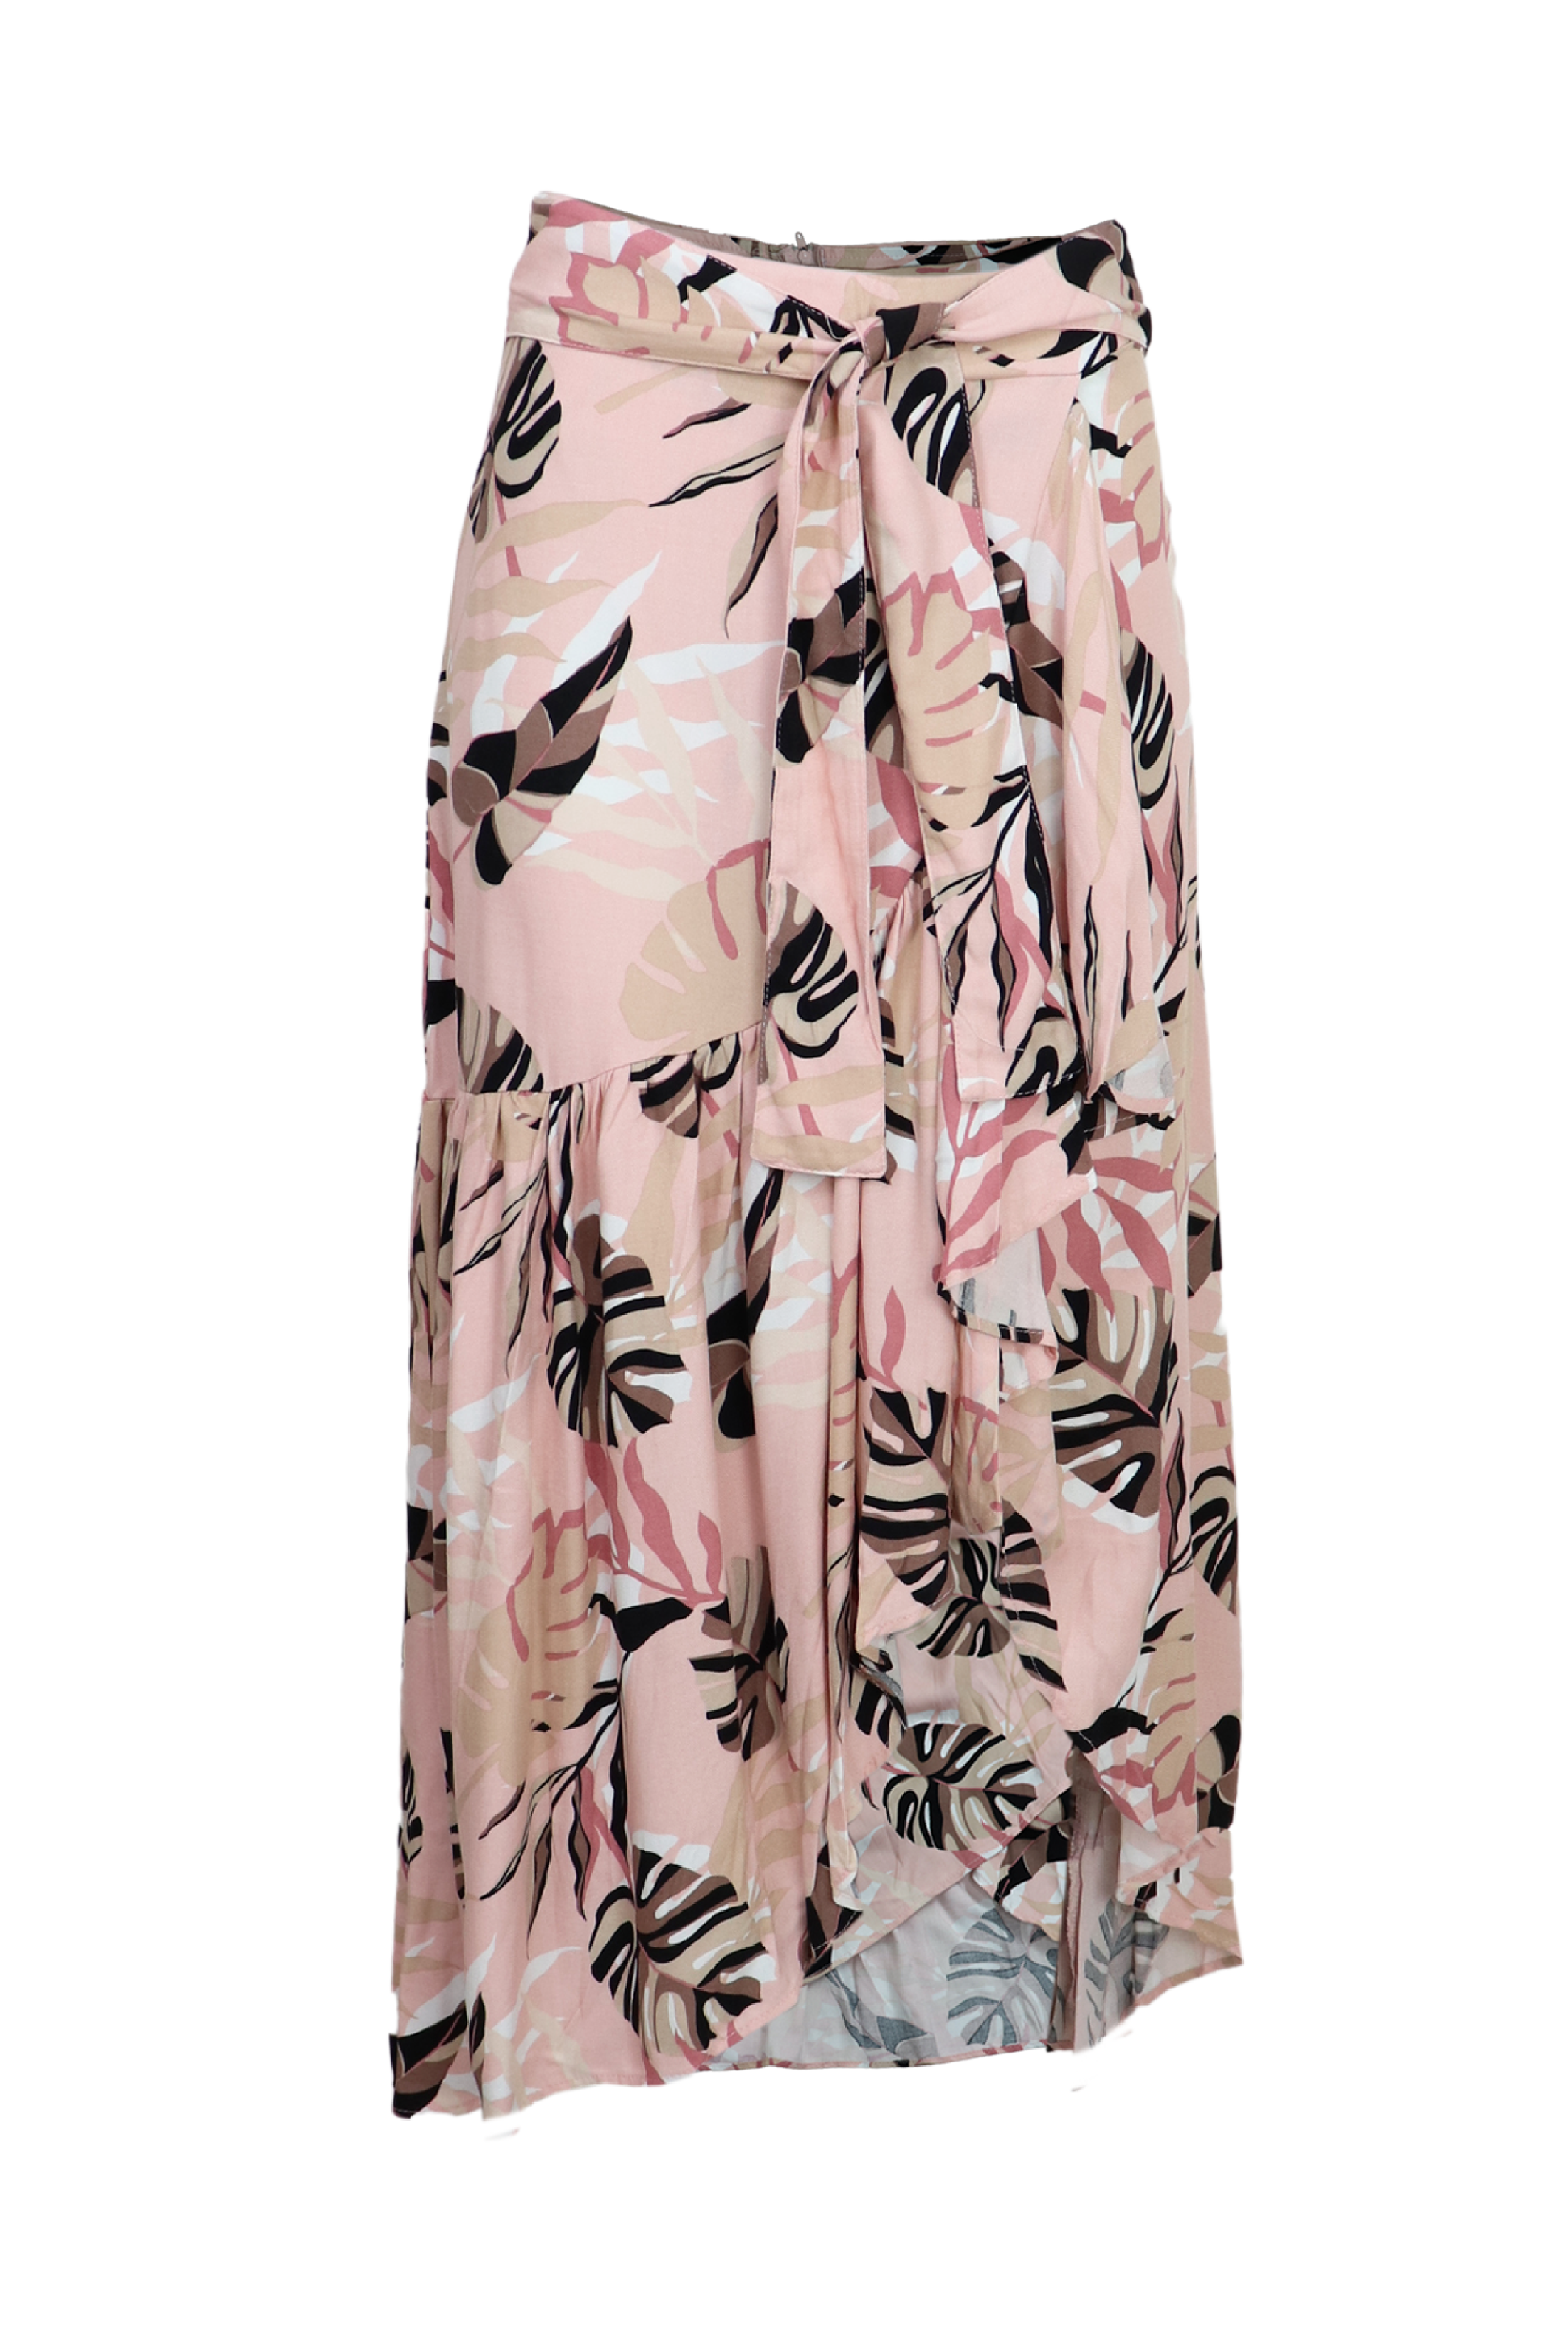 Falda larga con estampado rosa claro y palmeras.